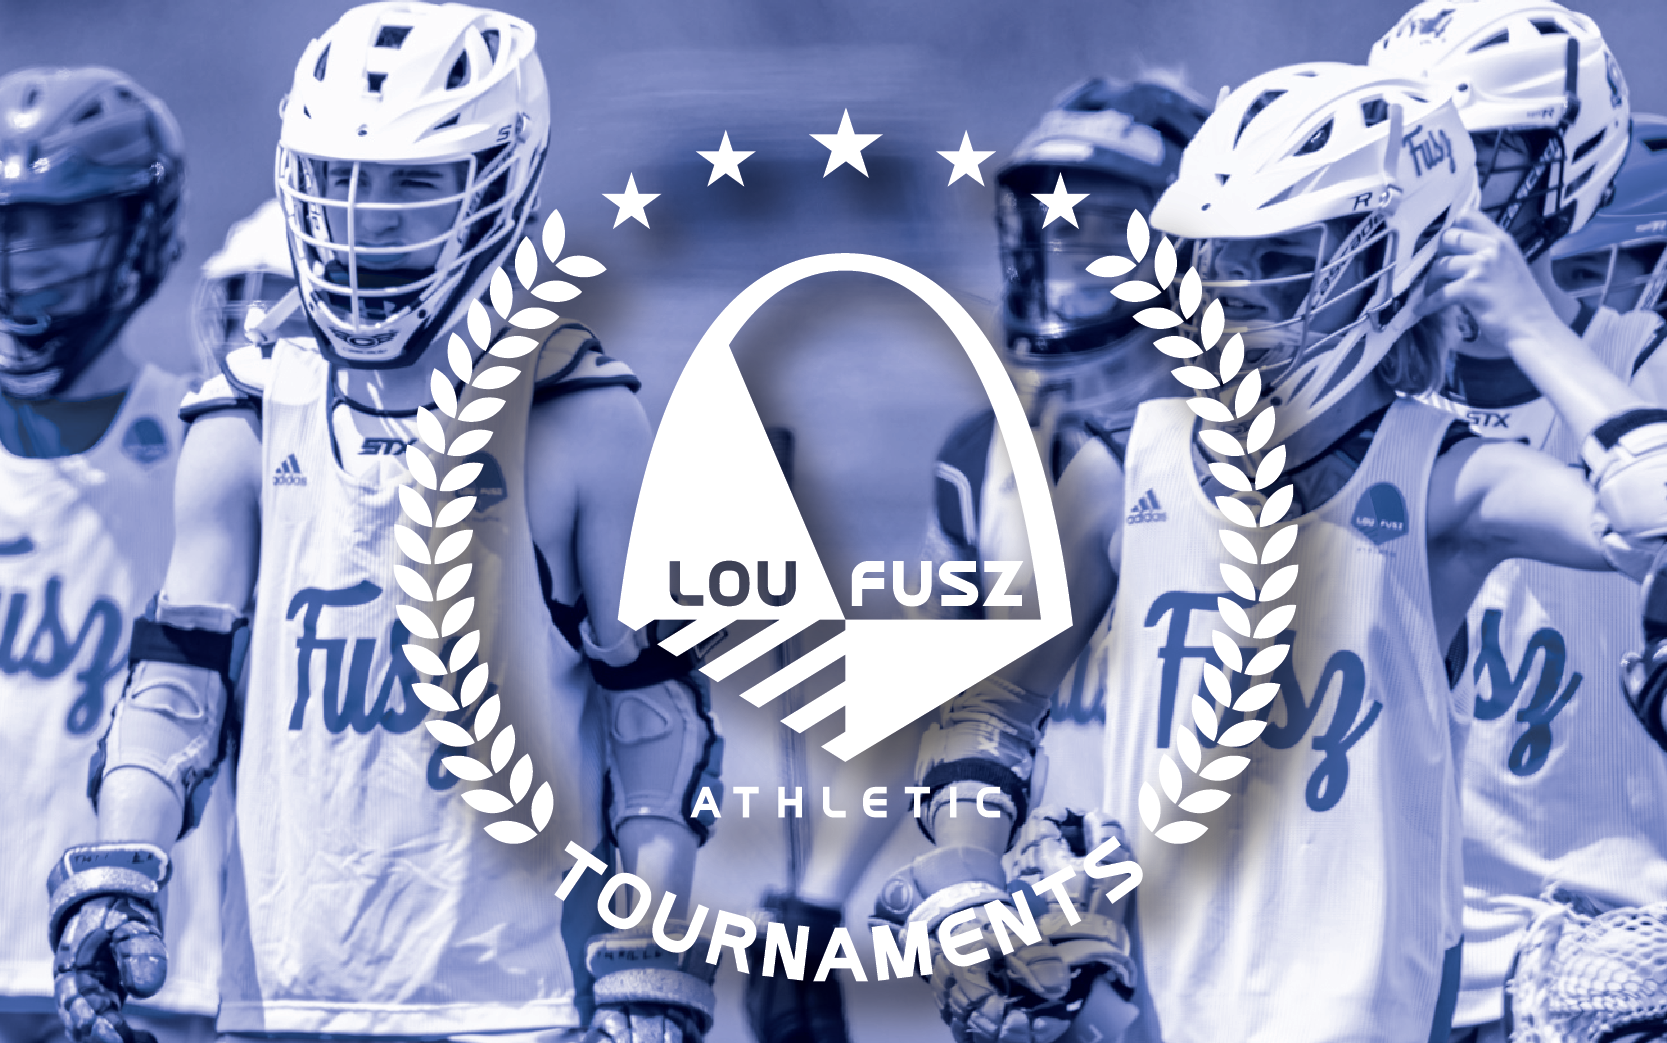 Lou Fusz Athletic Lacrosse tournaments